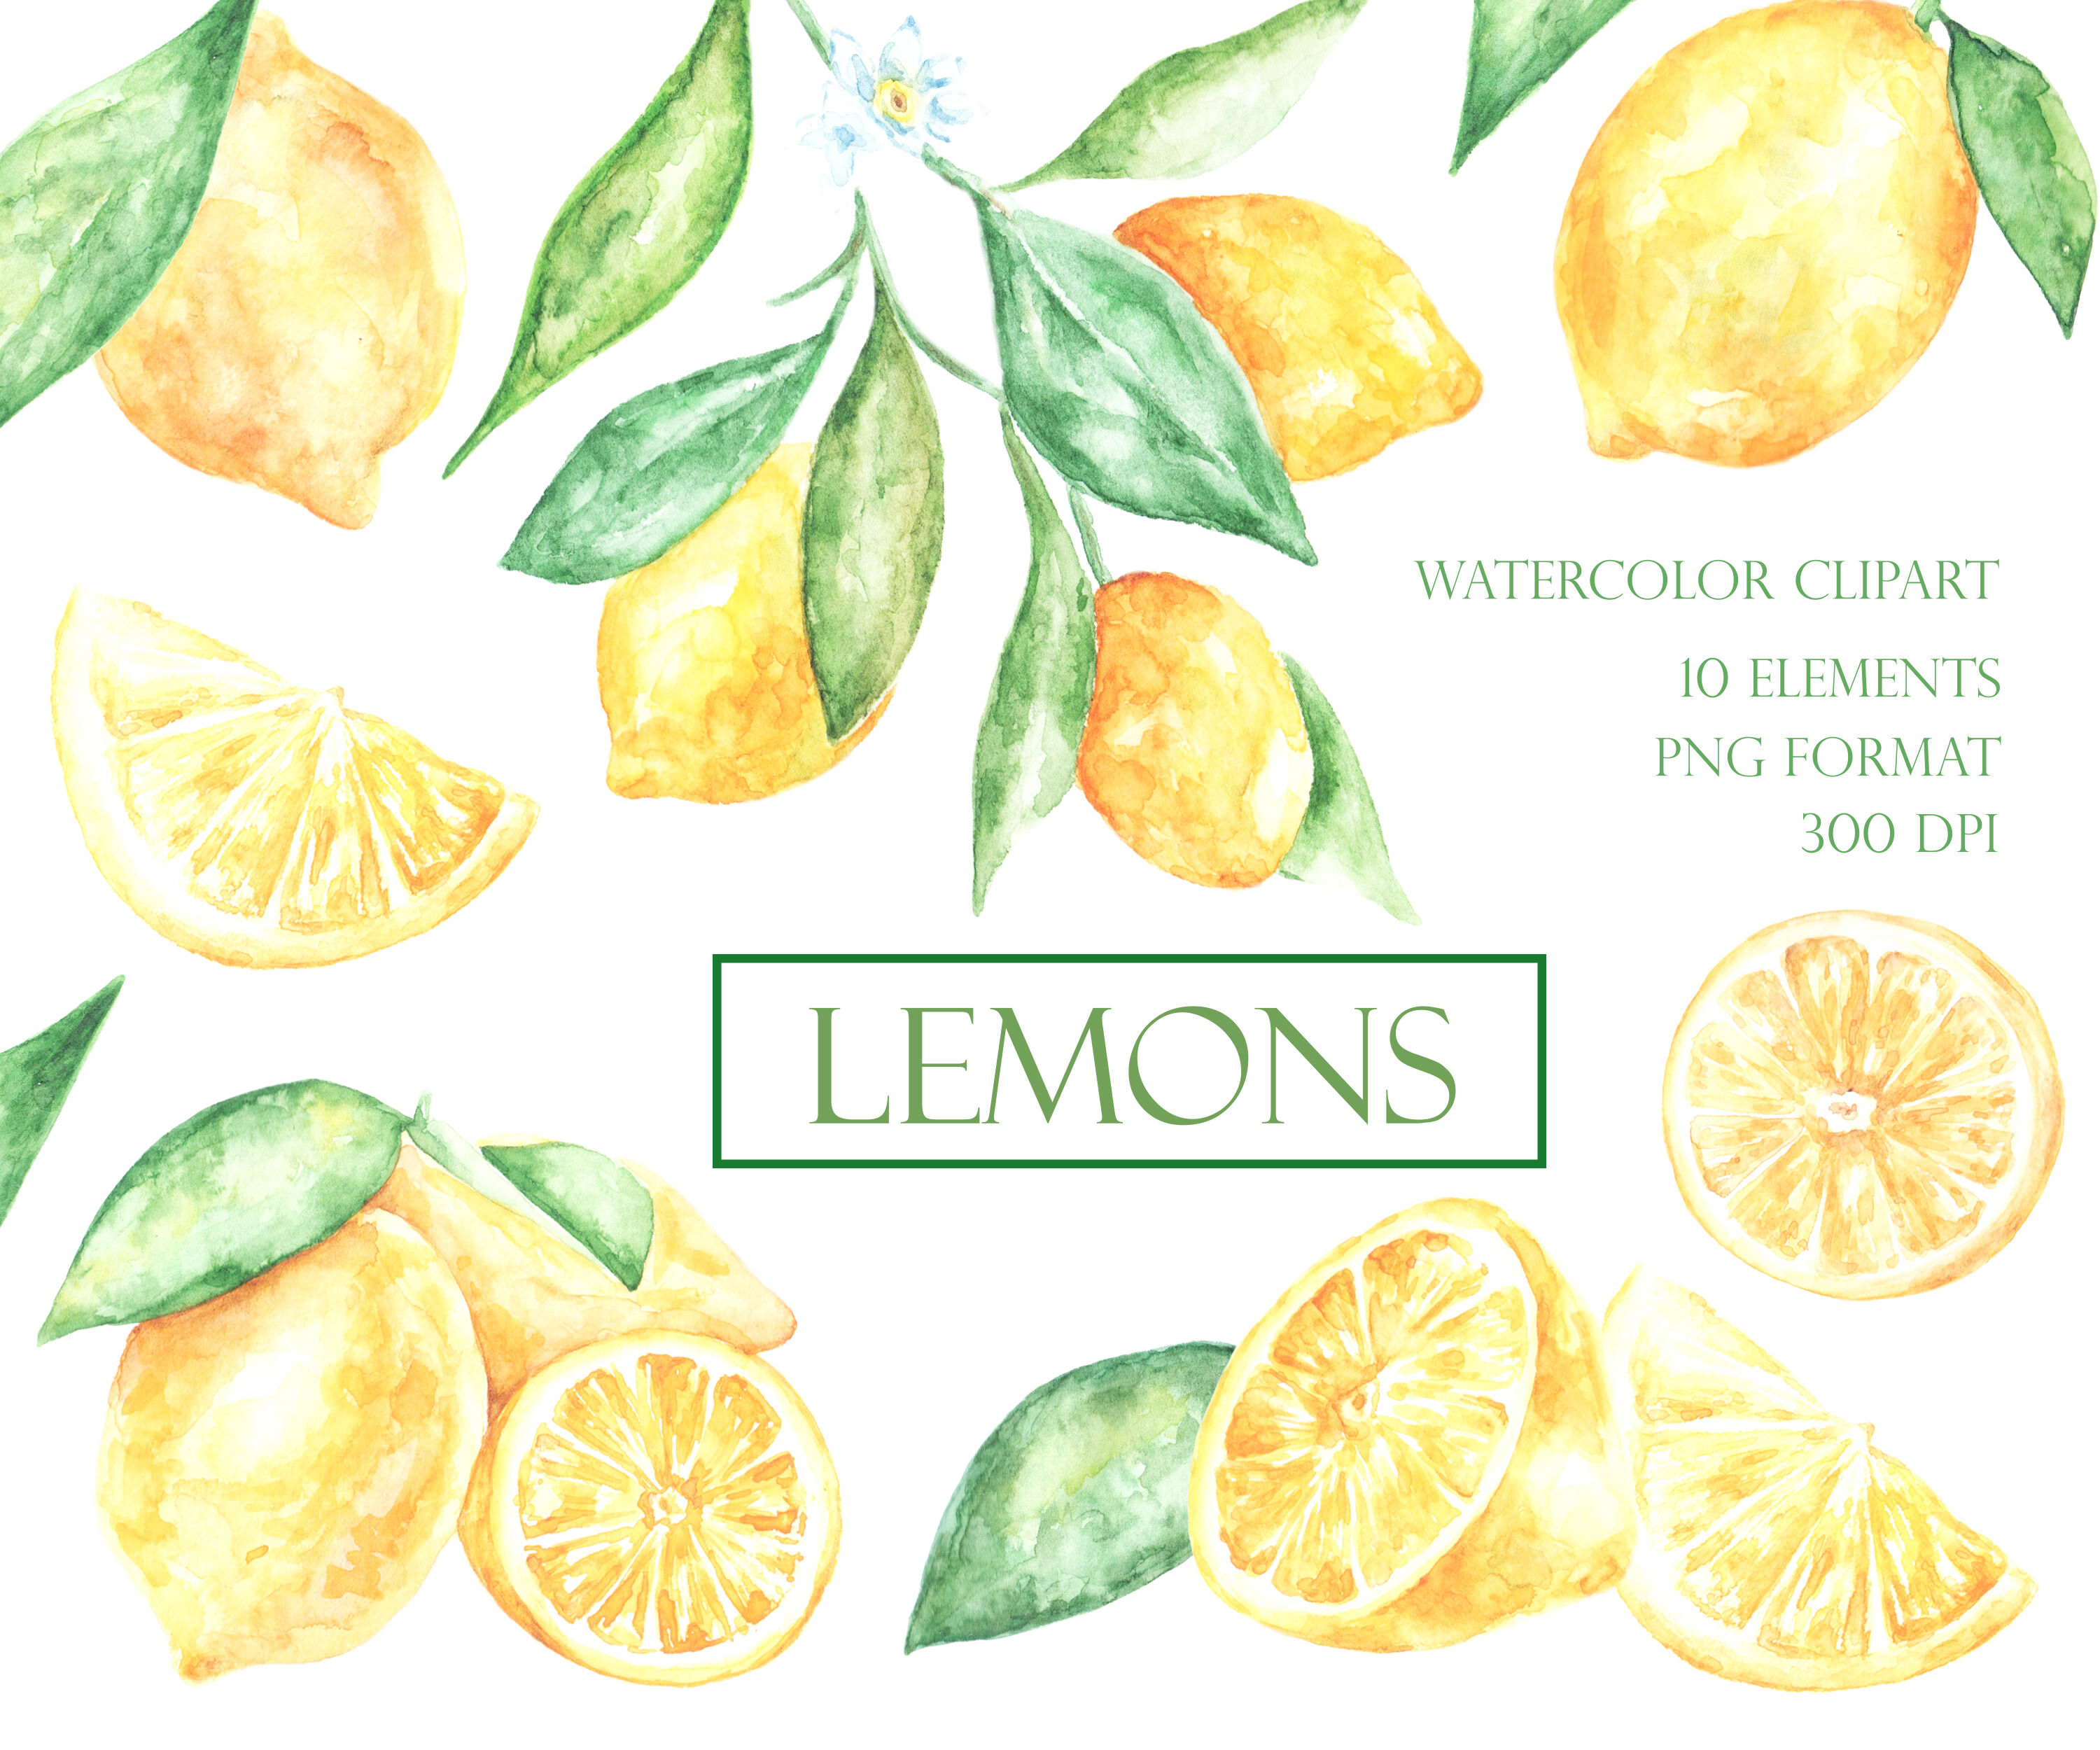 Lemon watercolor clipart. Lemons set. Slice of lemon. Citrus clipart ...